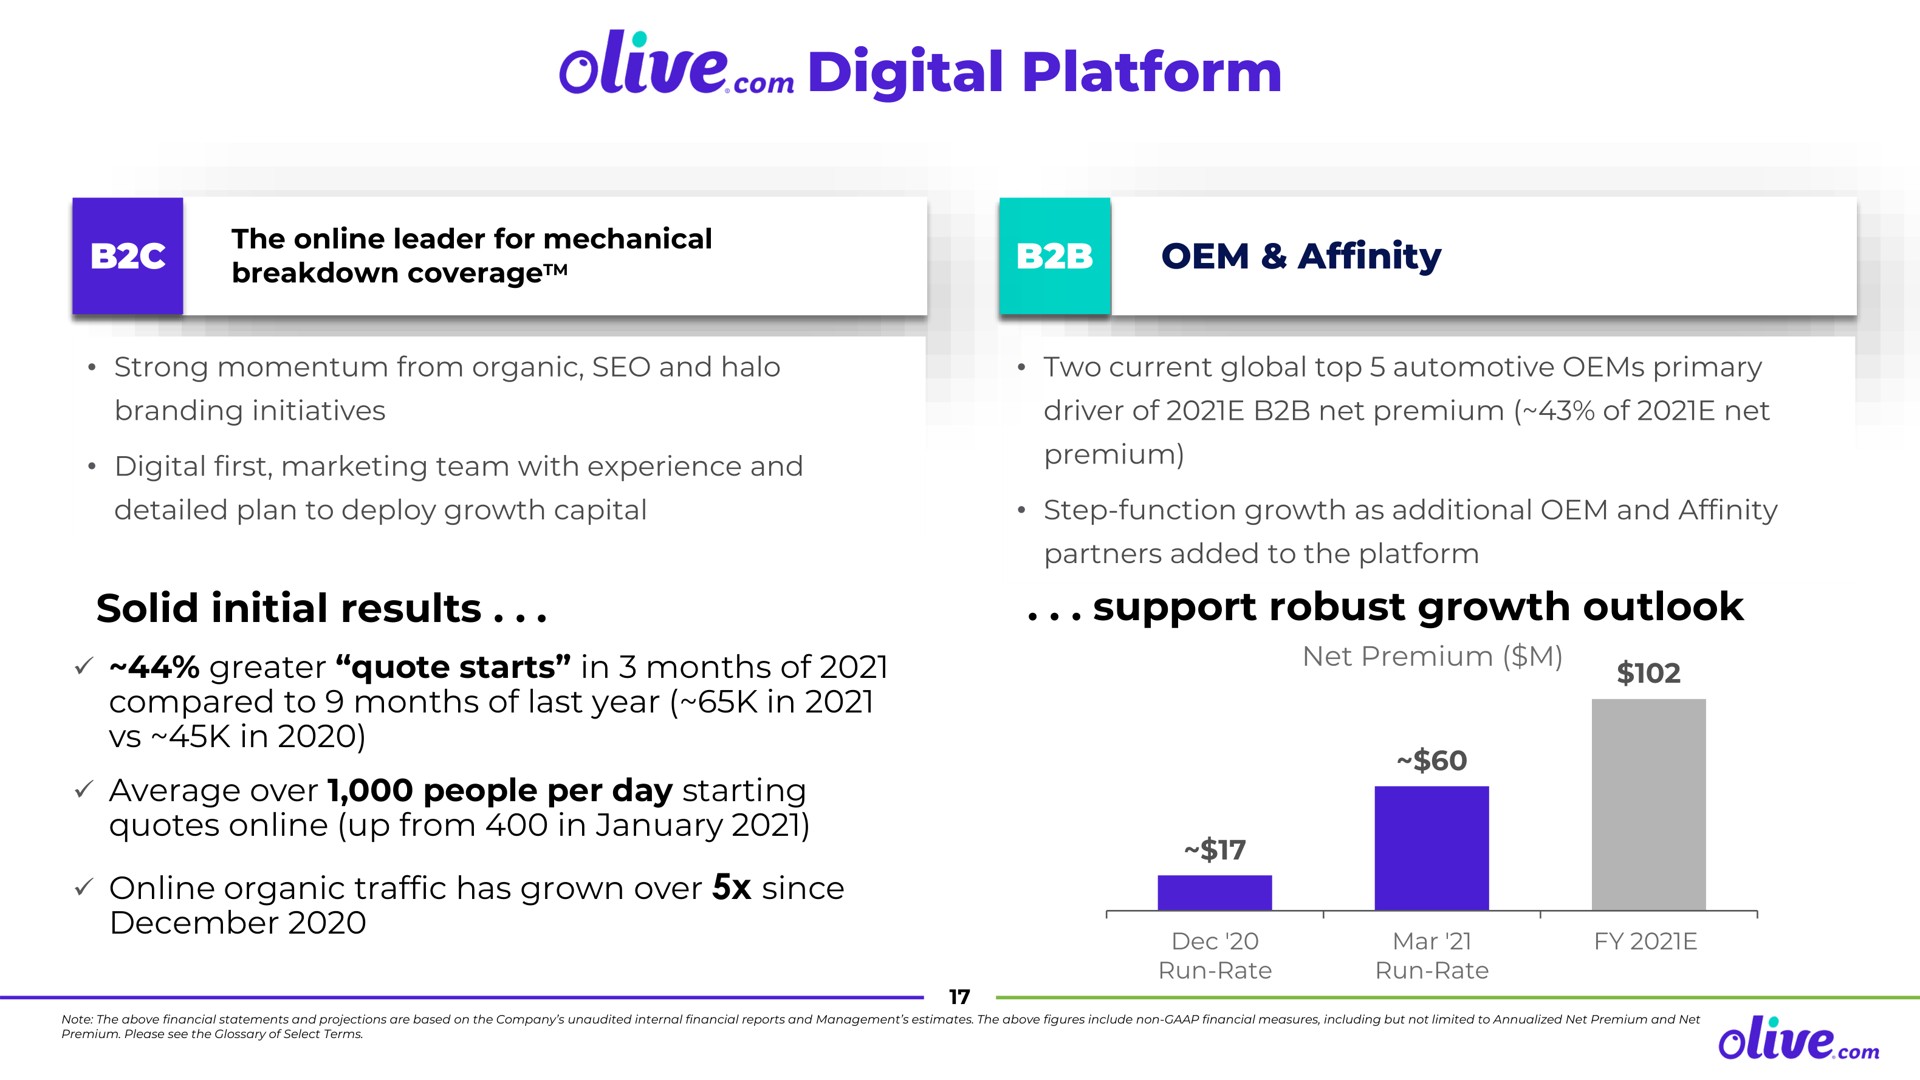 olive digital platform con | Olive.com